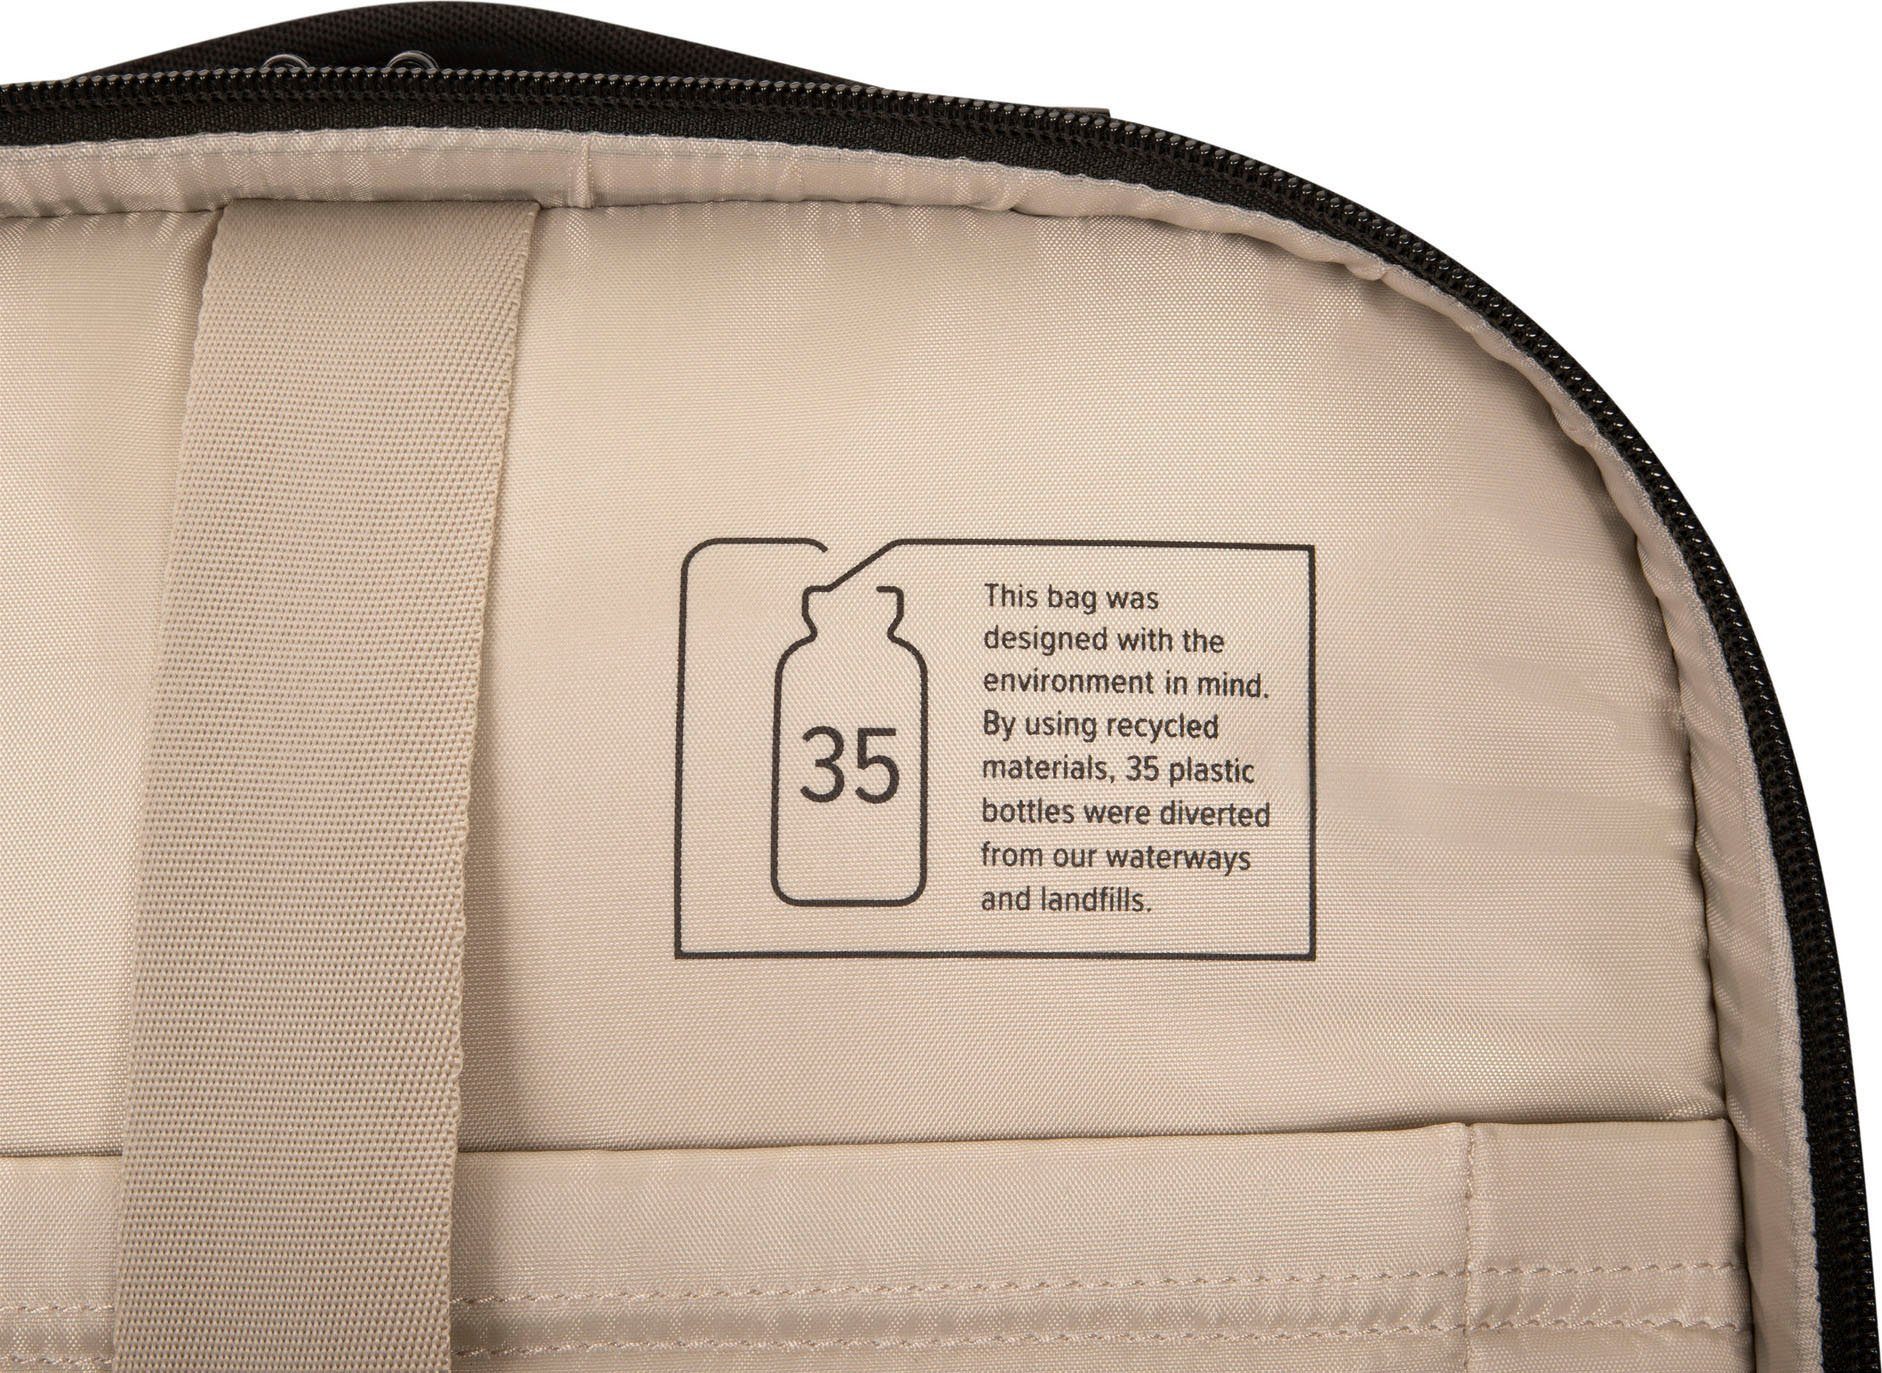 Rolling 15.6 Laptoptasche Traveller Mobile Targus Tech Backpack